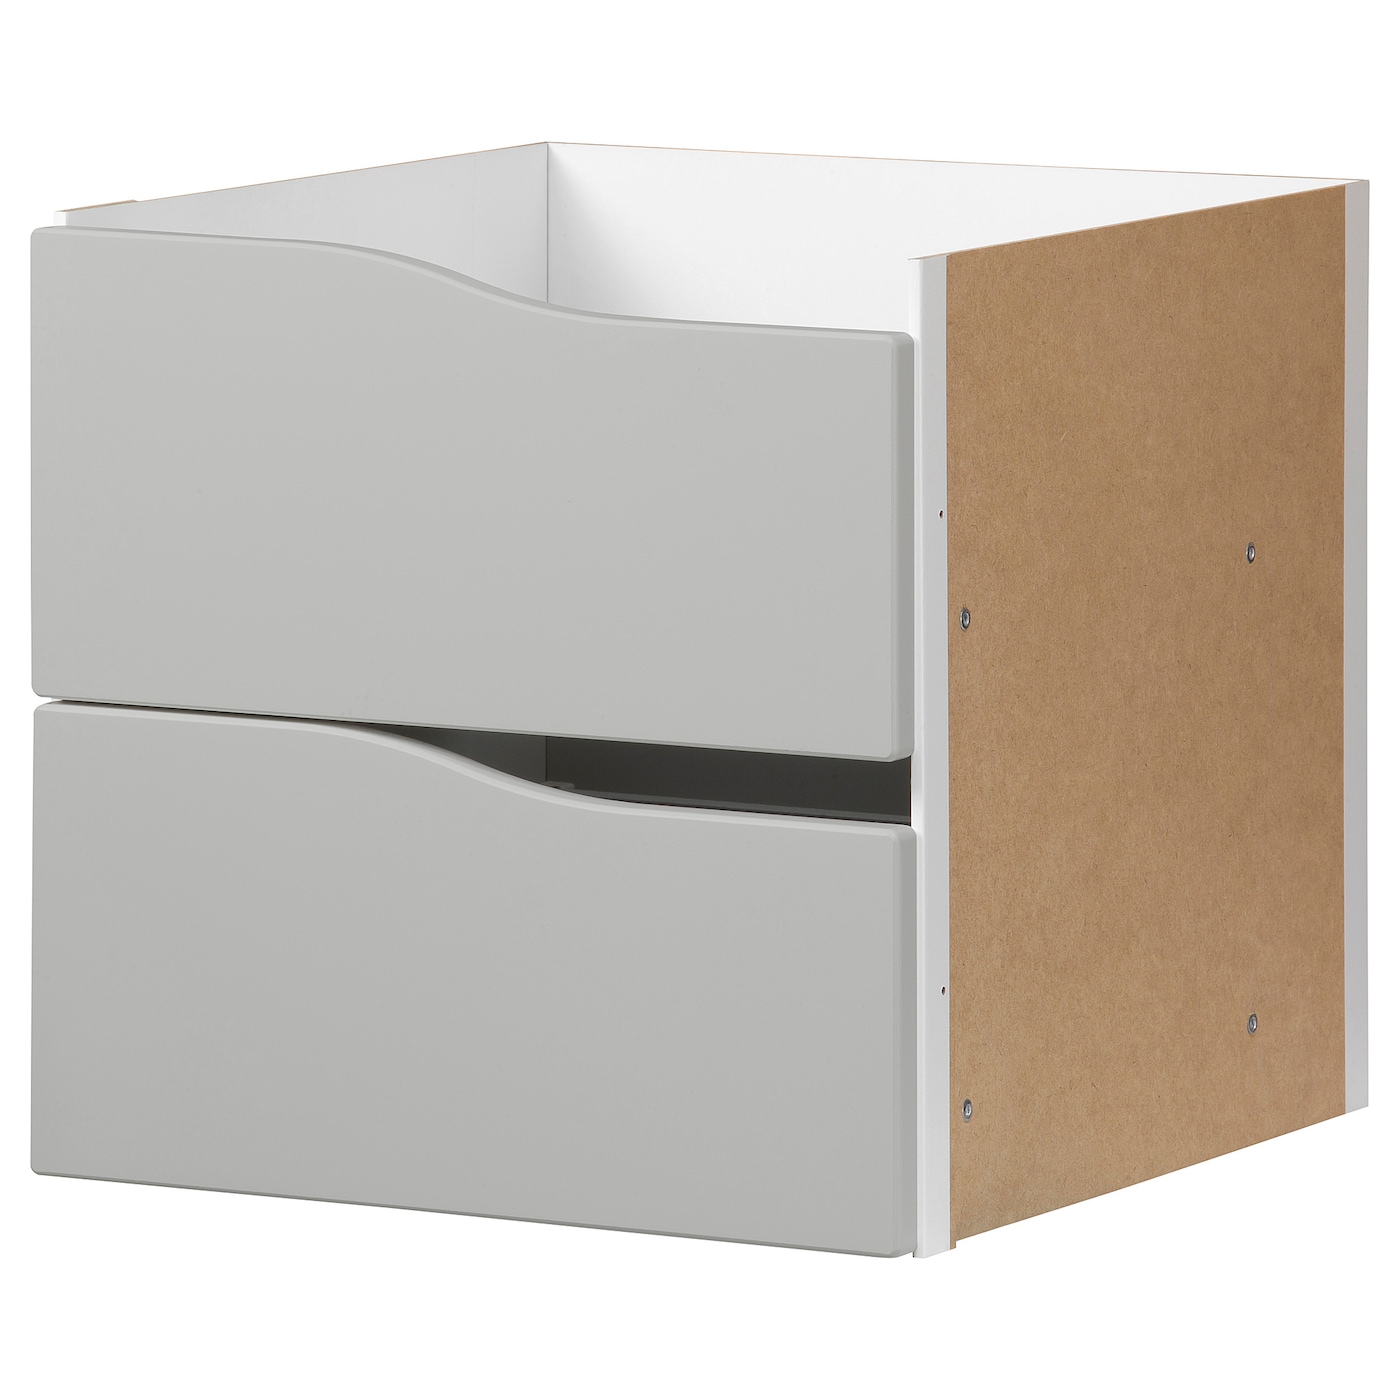 Вставка с 2 ящиками - KALLAX IKEA/КАЛЛАКС ИКЕА, 33х33 см, бежевый/серый